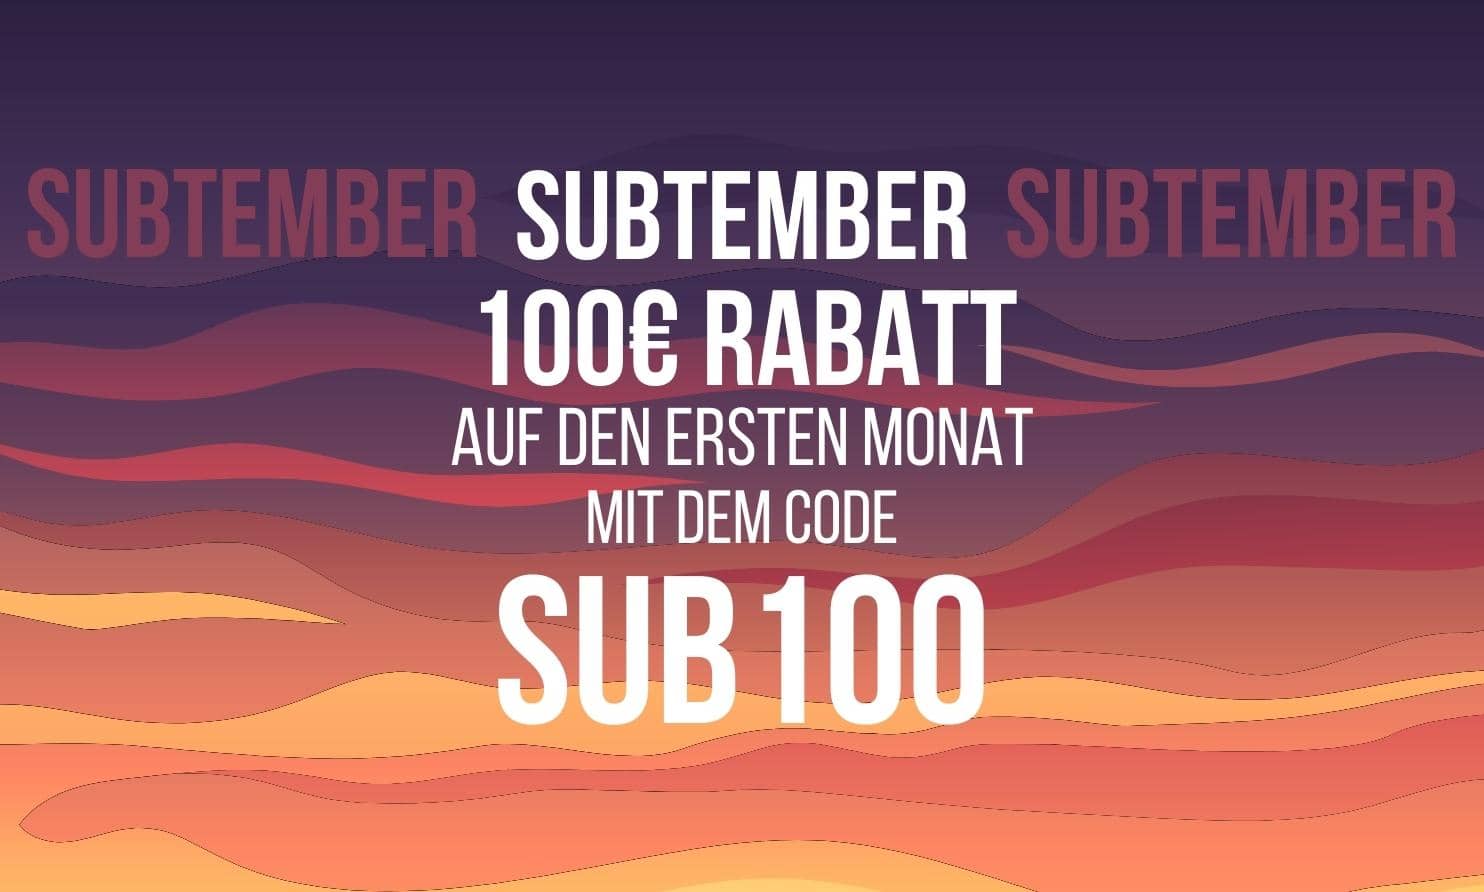 Subtember auf SINEE.de – Jetzt für die 6-Monatskurse einschreiben und 100€ sparen